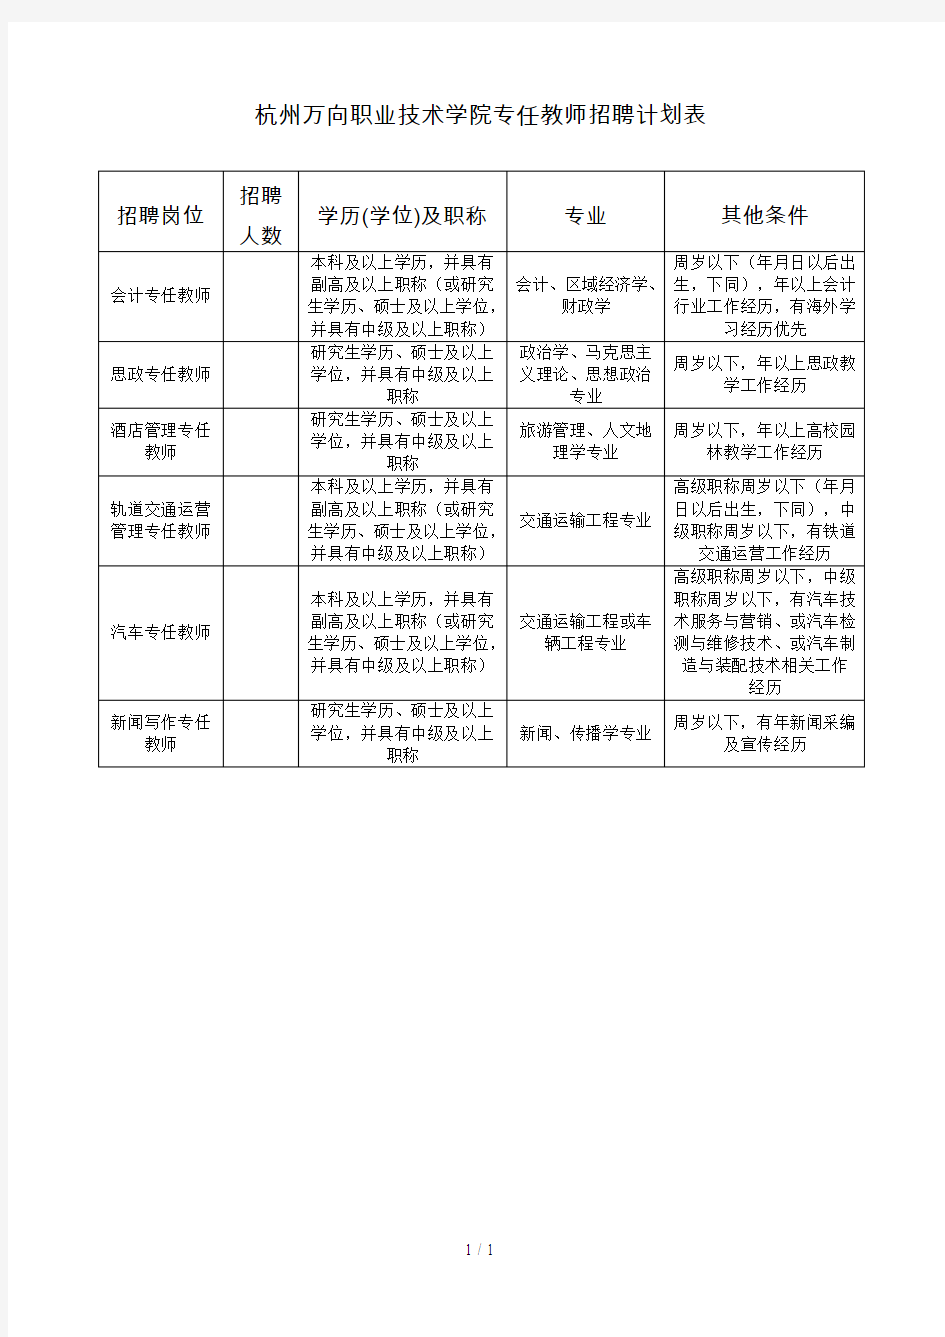 杭州万向职业技术学院专任教师招聘计划表